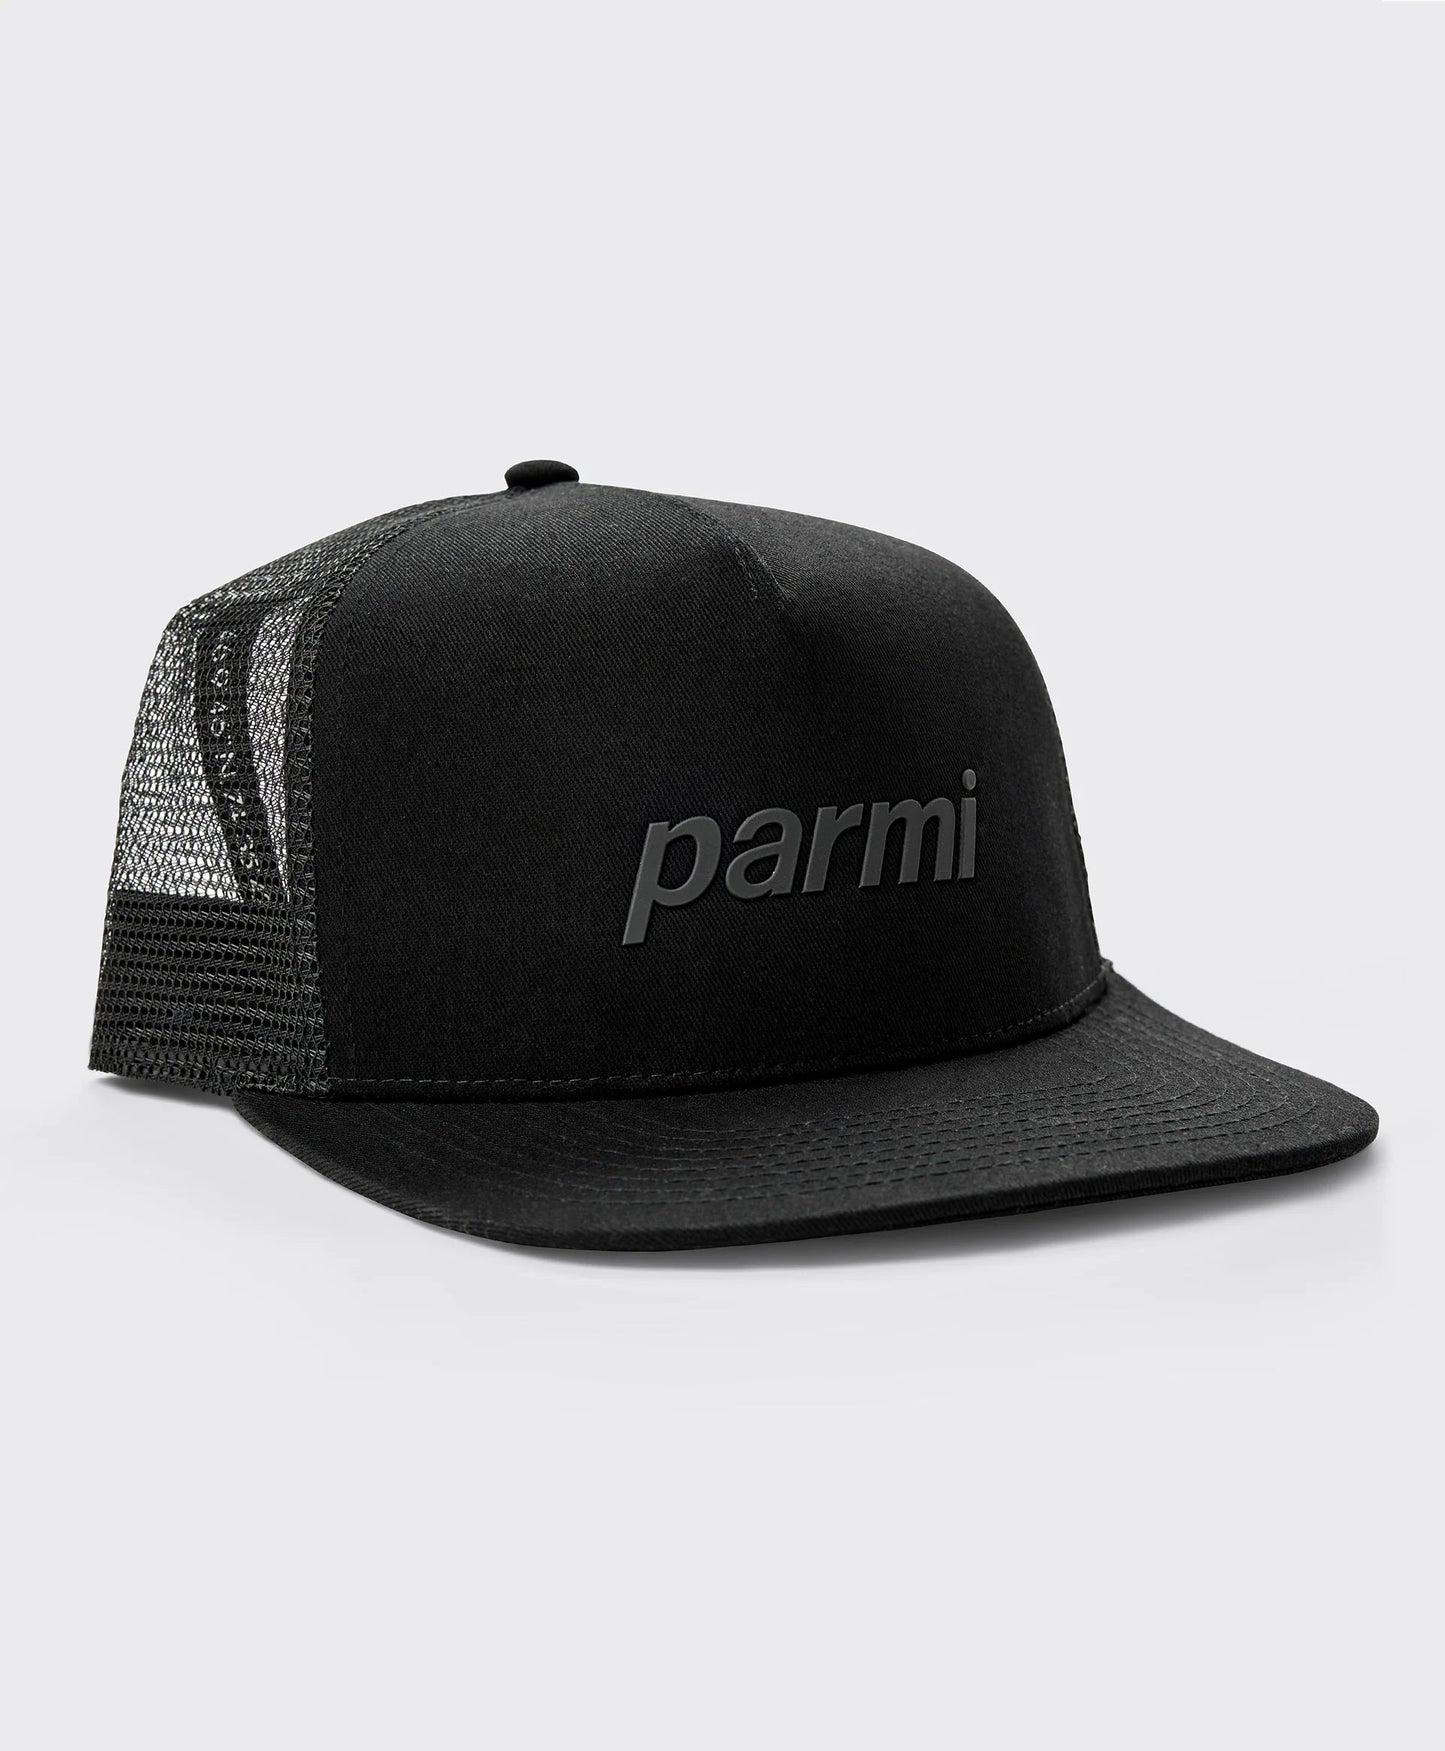 Parmi - Trucker cap Casual caps Parmi 